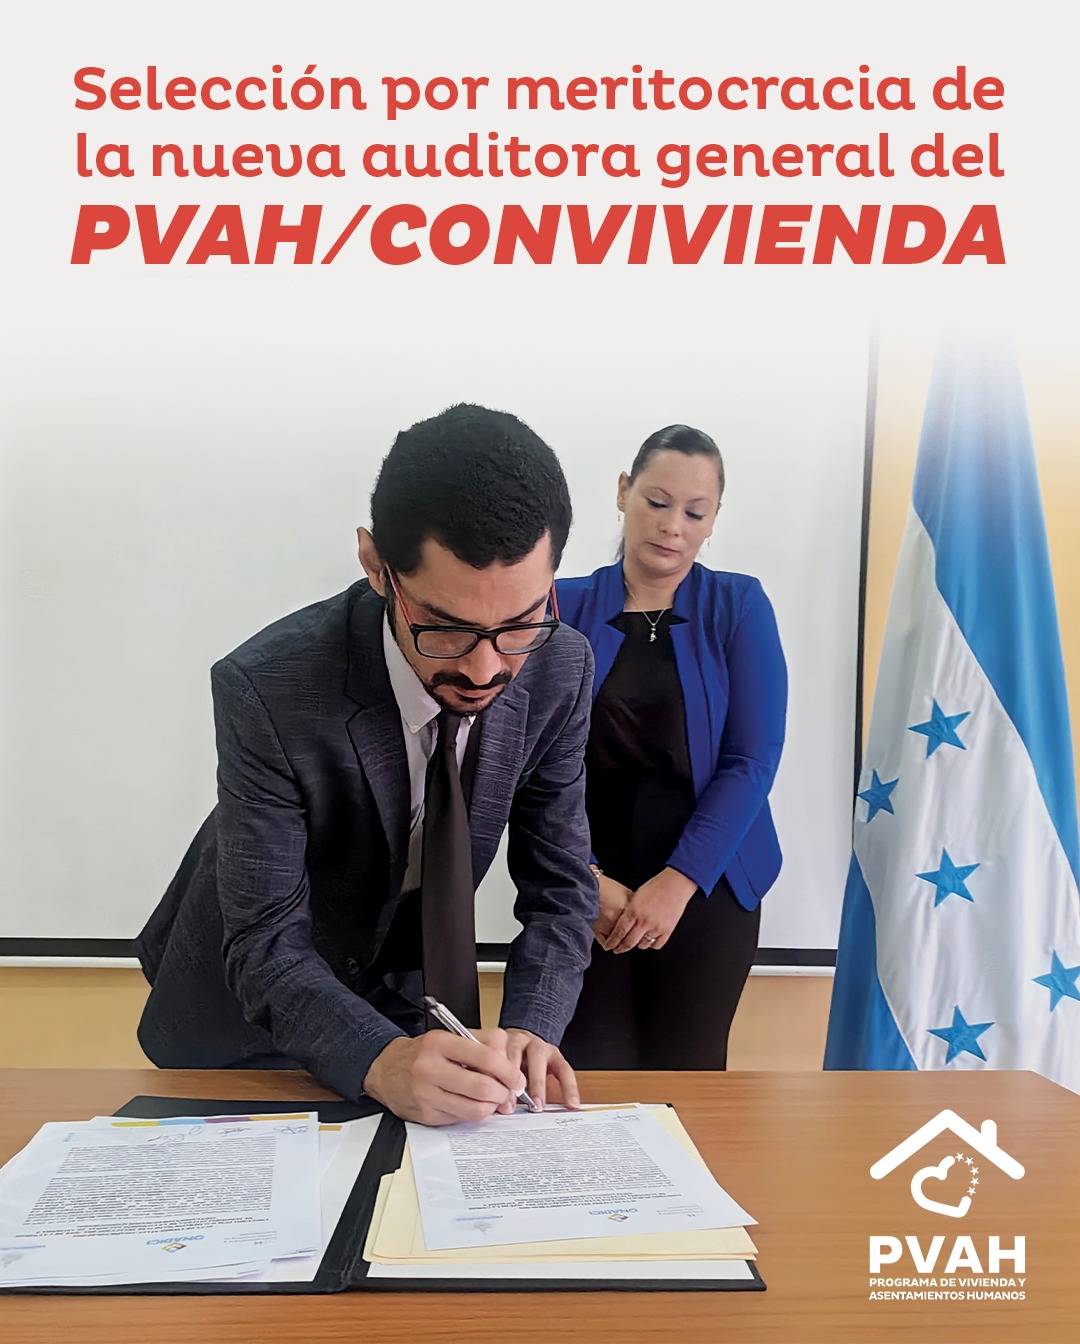 Nueva jefa de auditoría asume sus funciones en PVAH/CONVIVIENDA tras su nombramiento